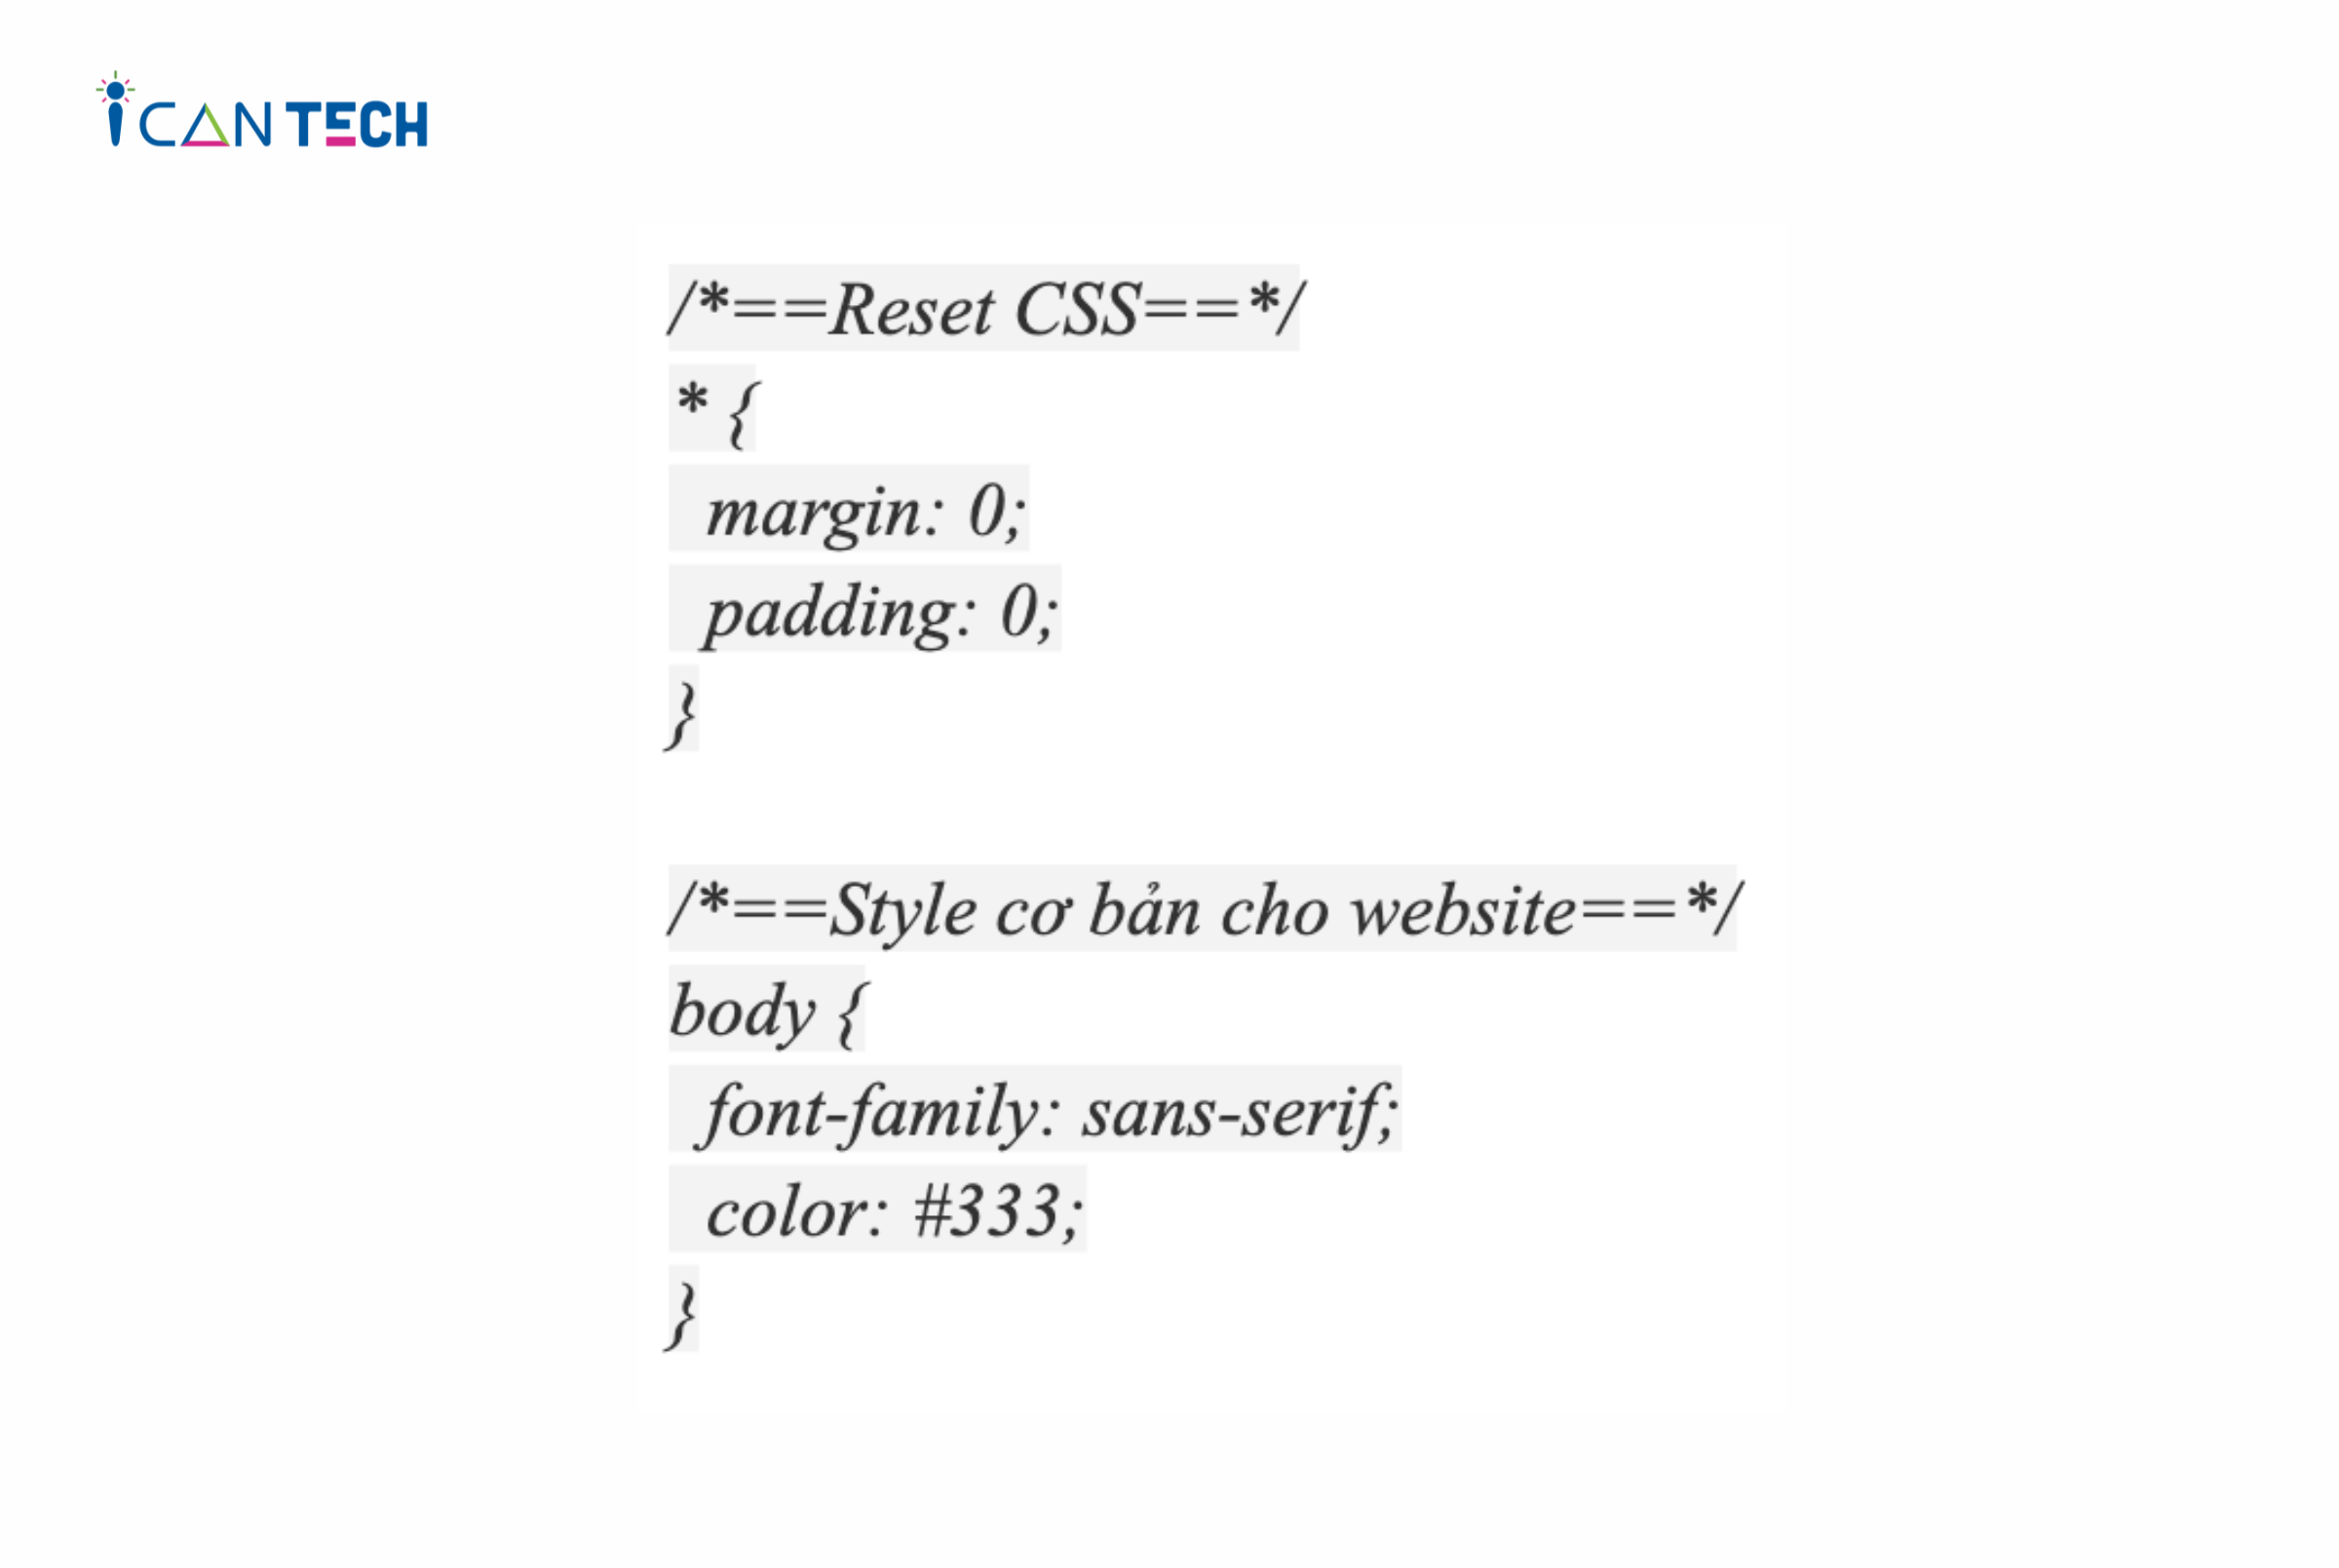 Bạn thực hiện reset CSS và bổ sung thêm style cho toàn website như mẫu bên dưới.png